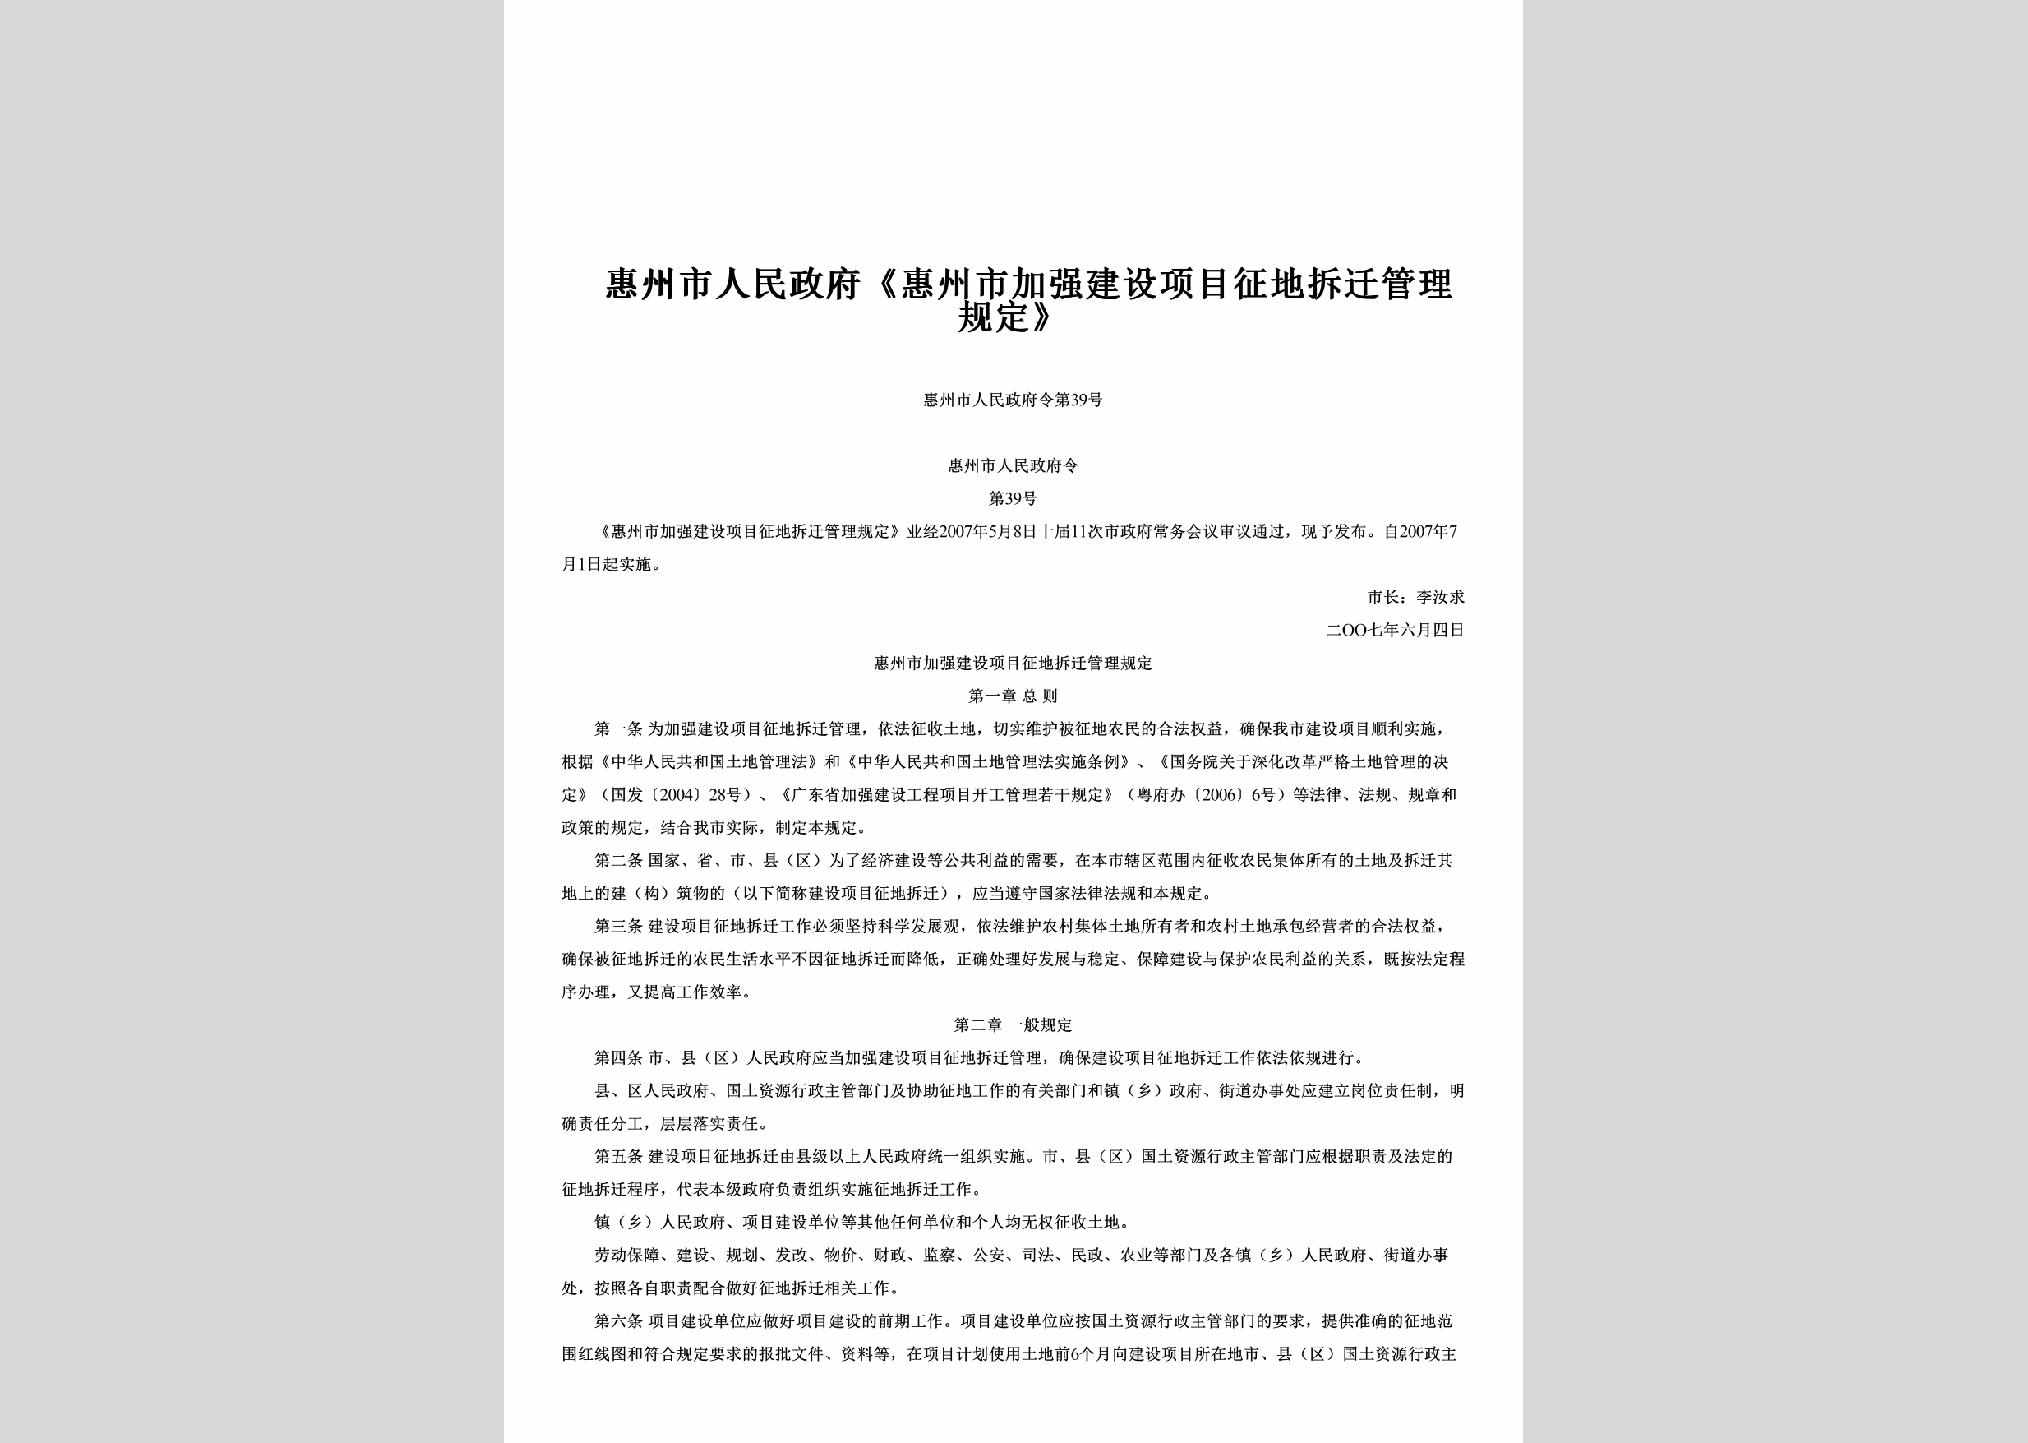 惠州市人民政府令第39号：《惠州市加强建设项目征地拆迁管理规定》